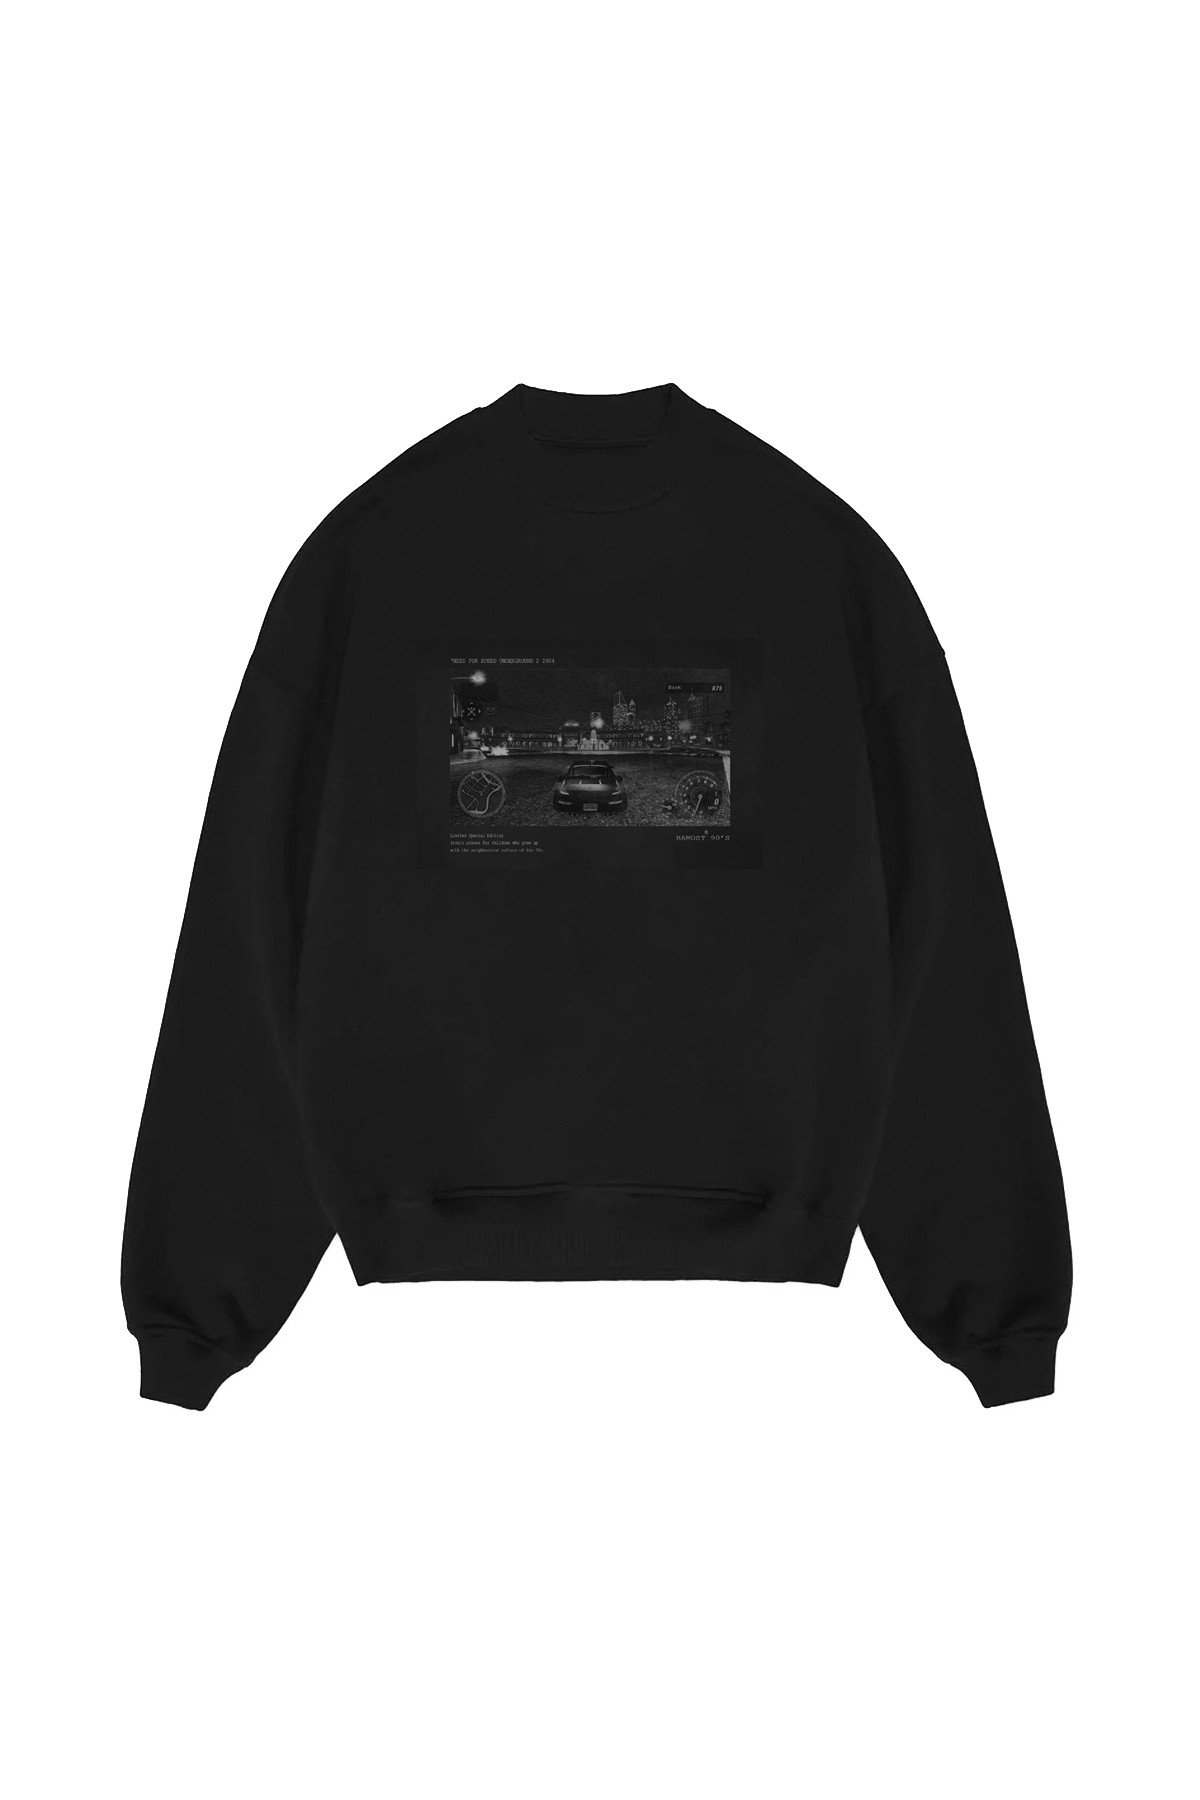 Underground - 90's Club Oversize Sweatshirt - BLACK